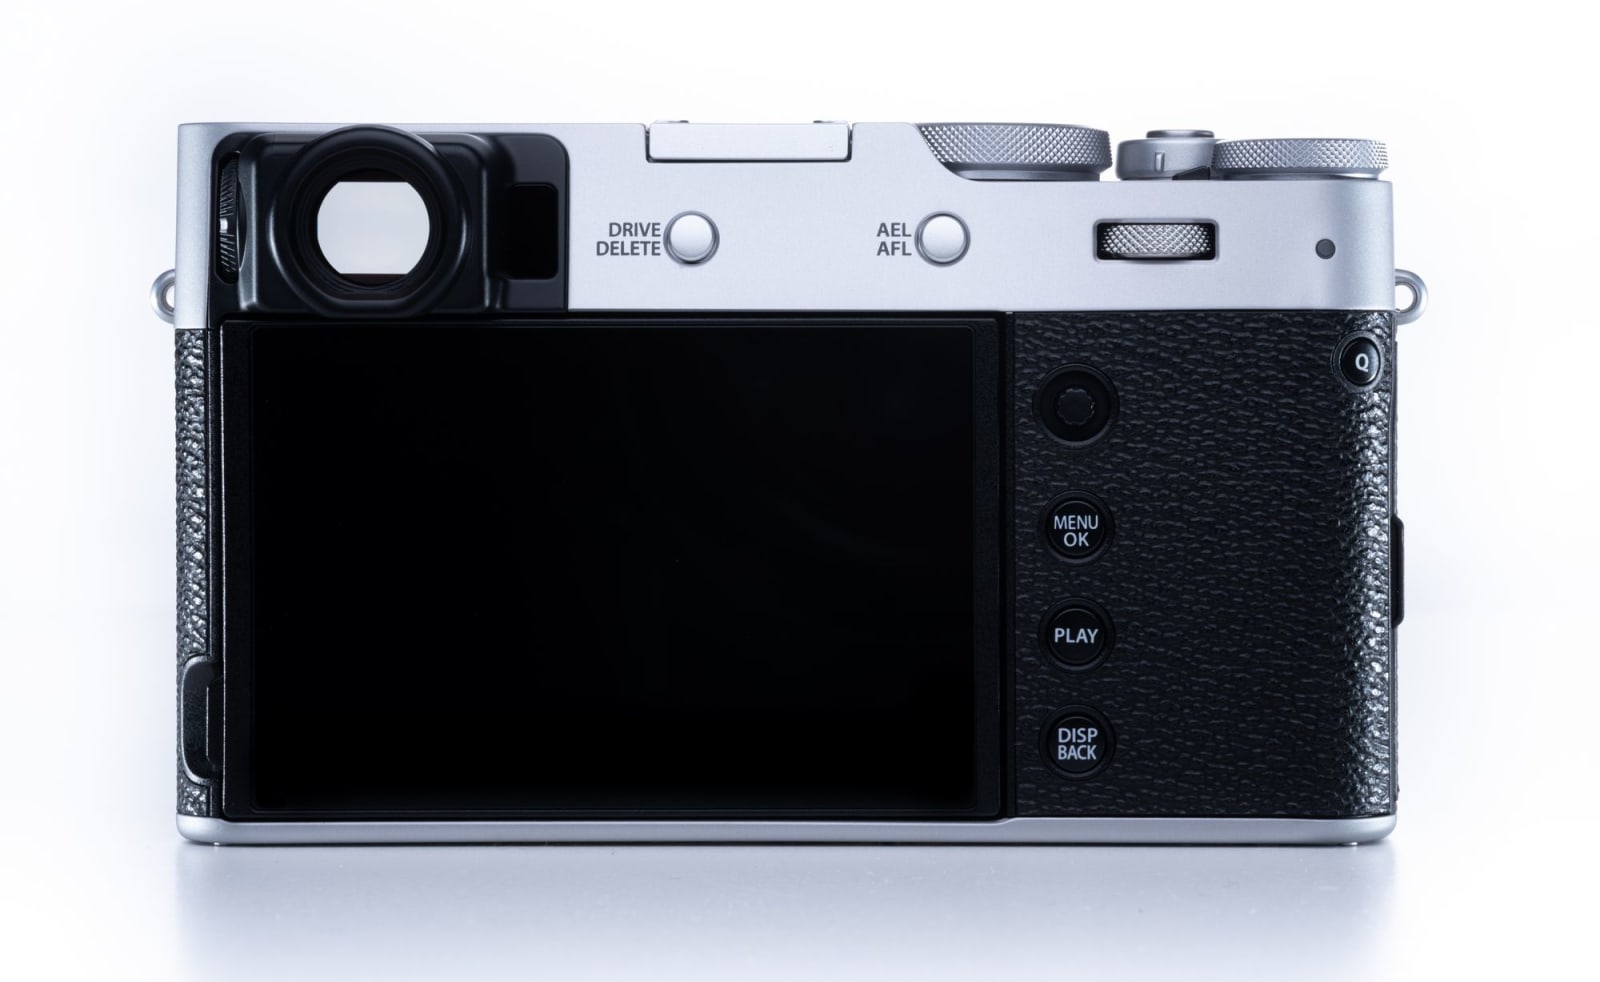 Fujifilm X100V compact fixed-lens APS-C camera